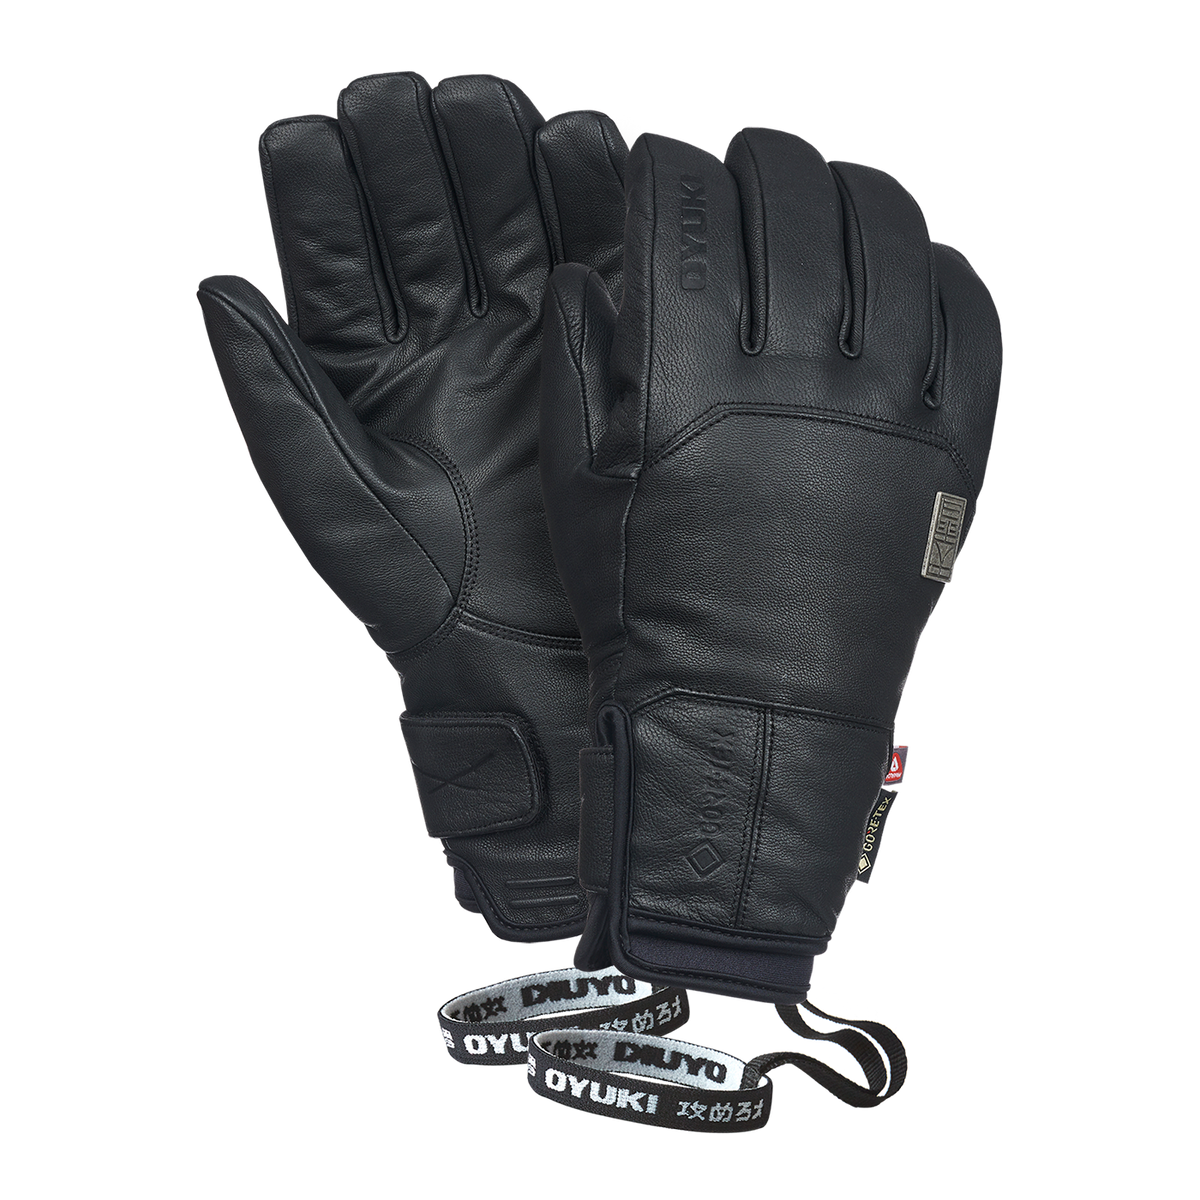 Sencho GTX Glove